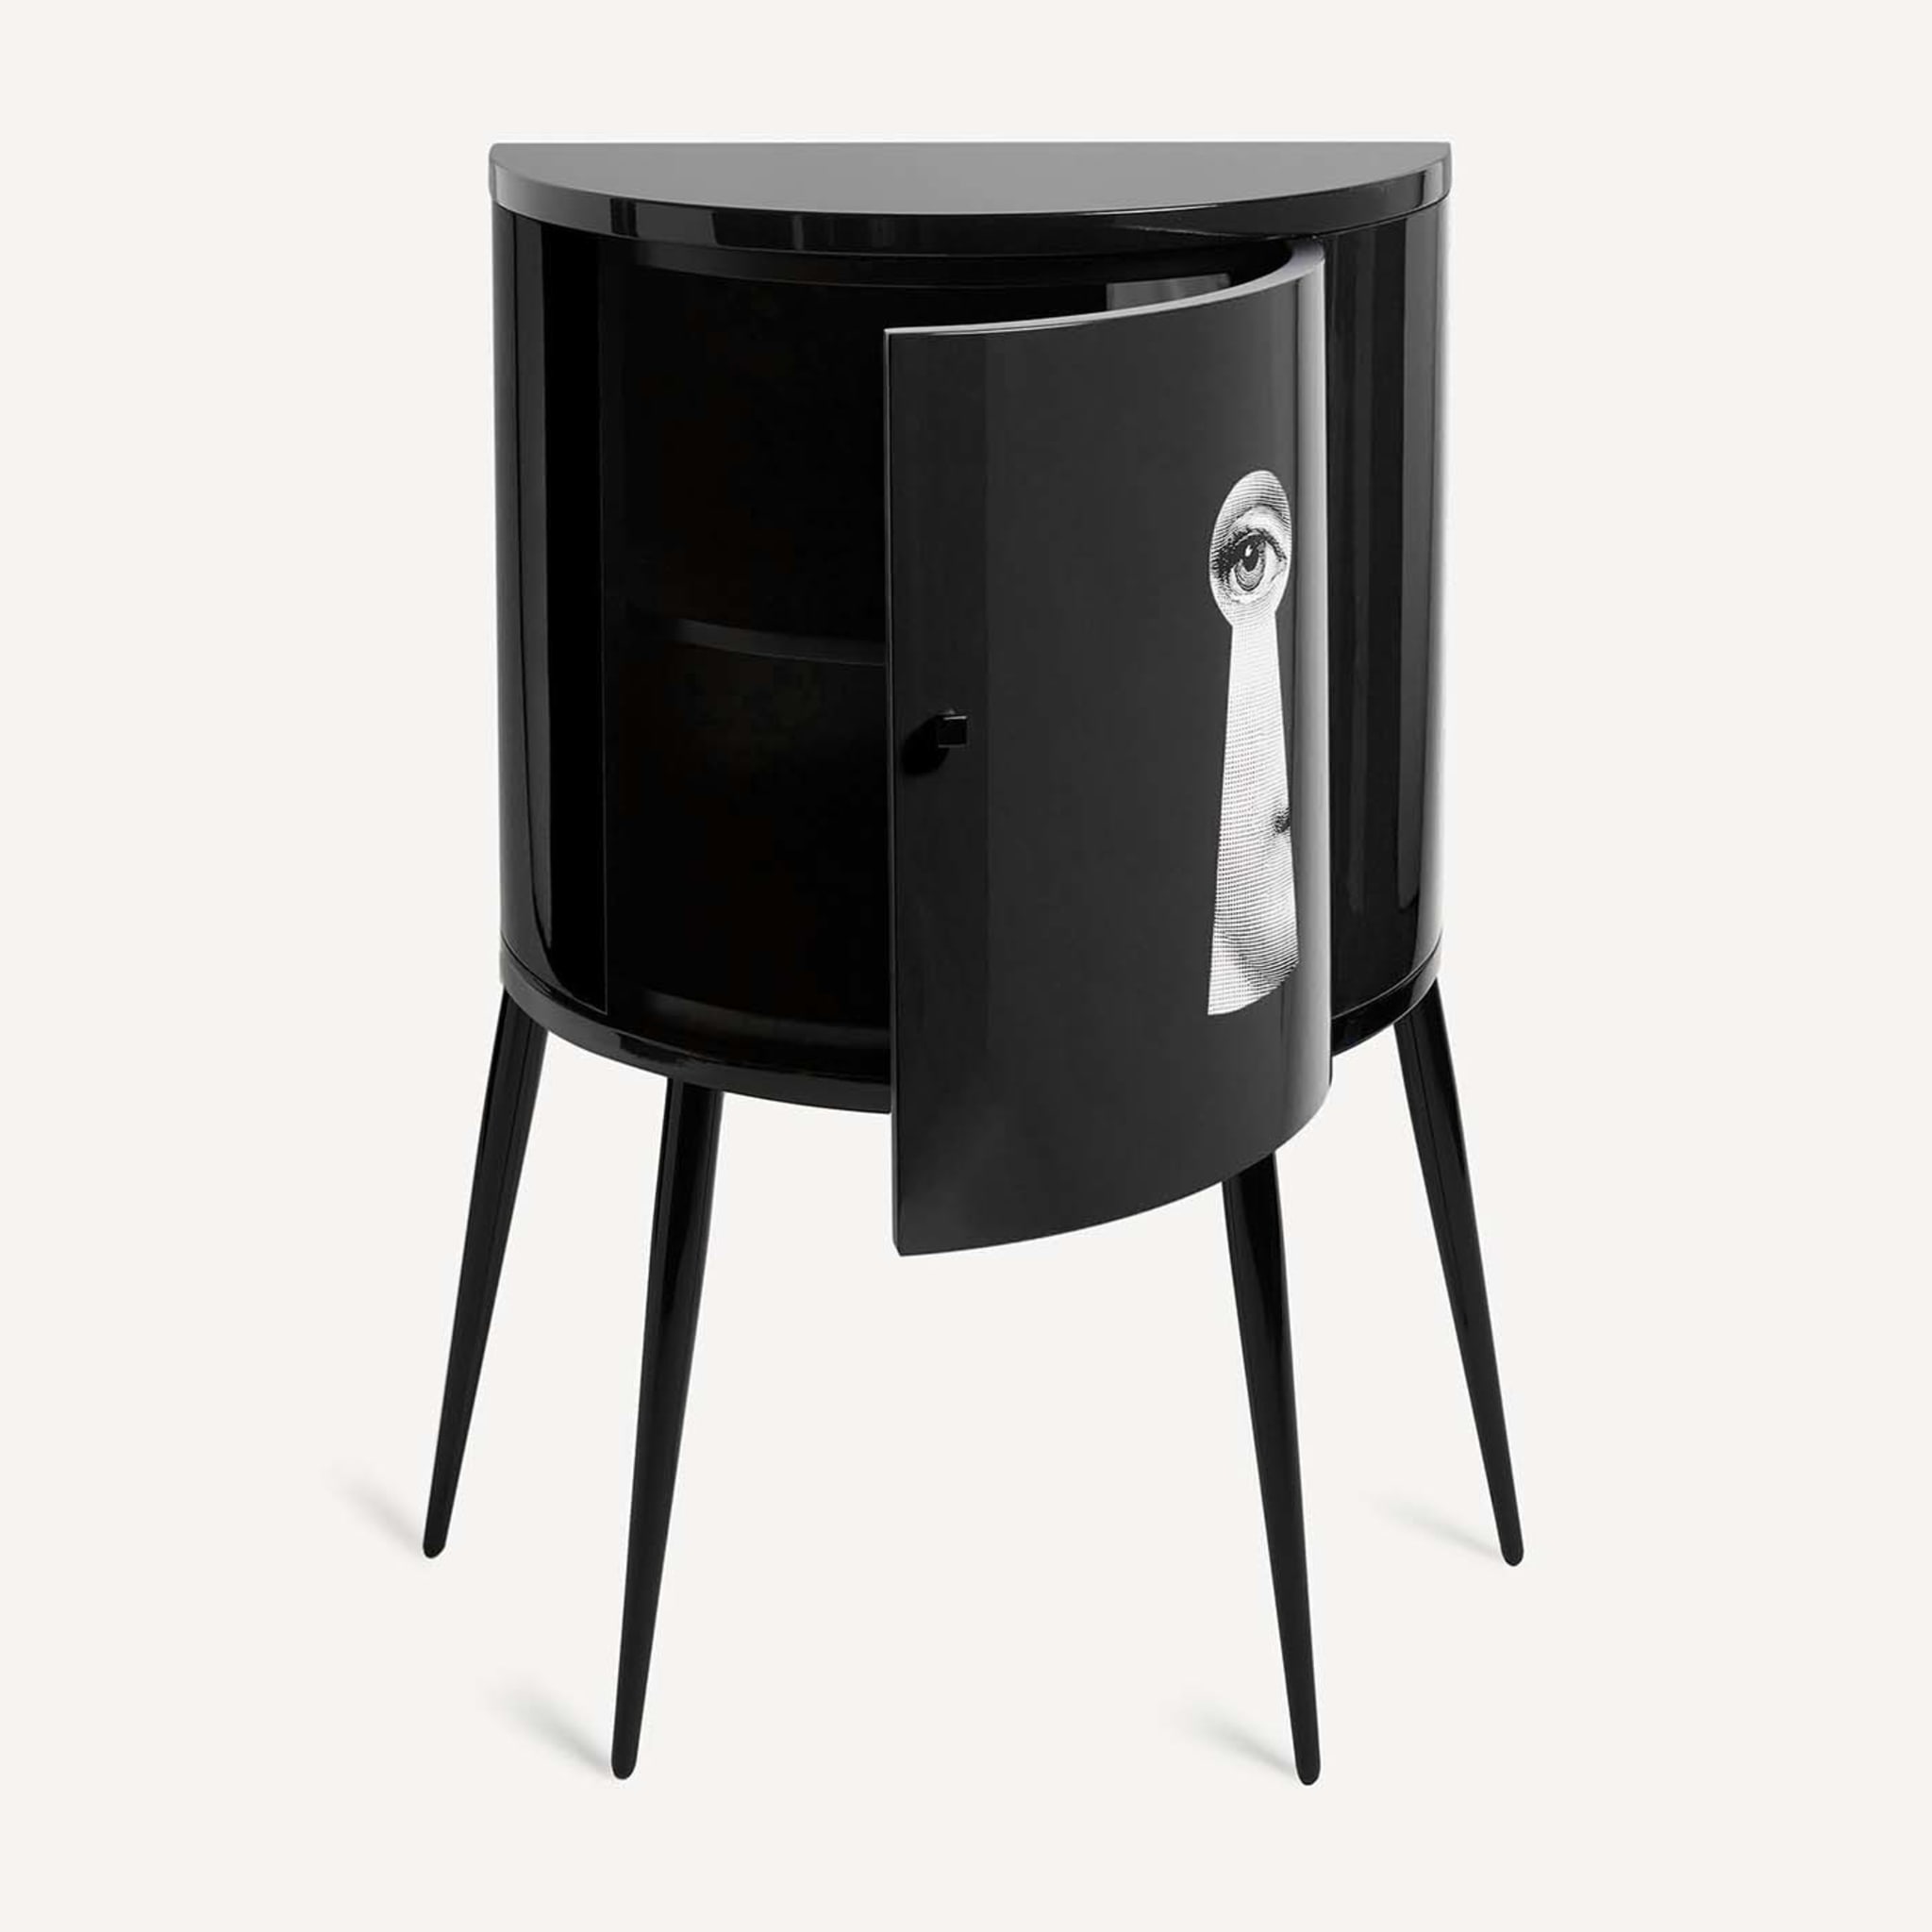 Serratura Black Curved Small Cabinet - Alternative view 4